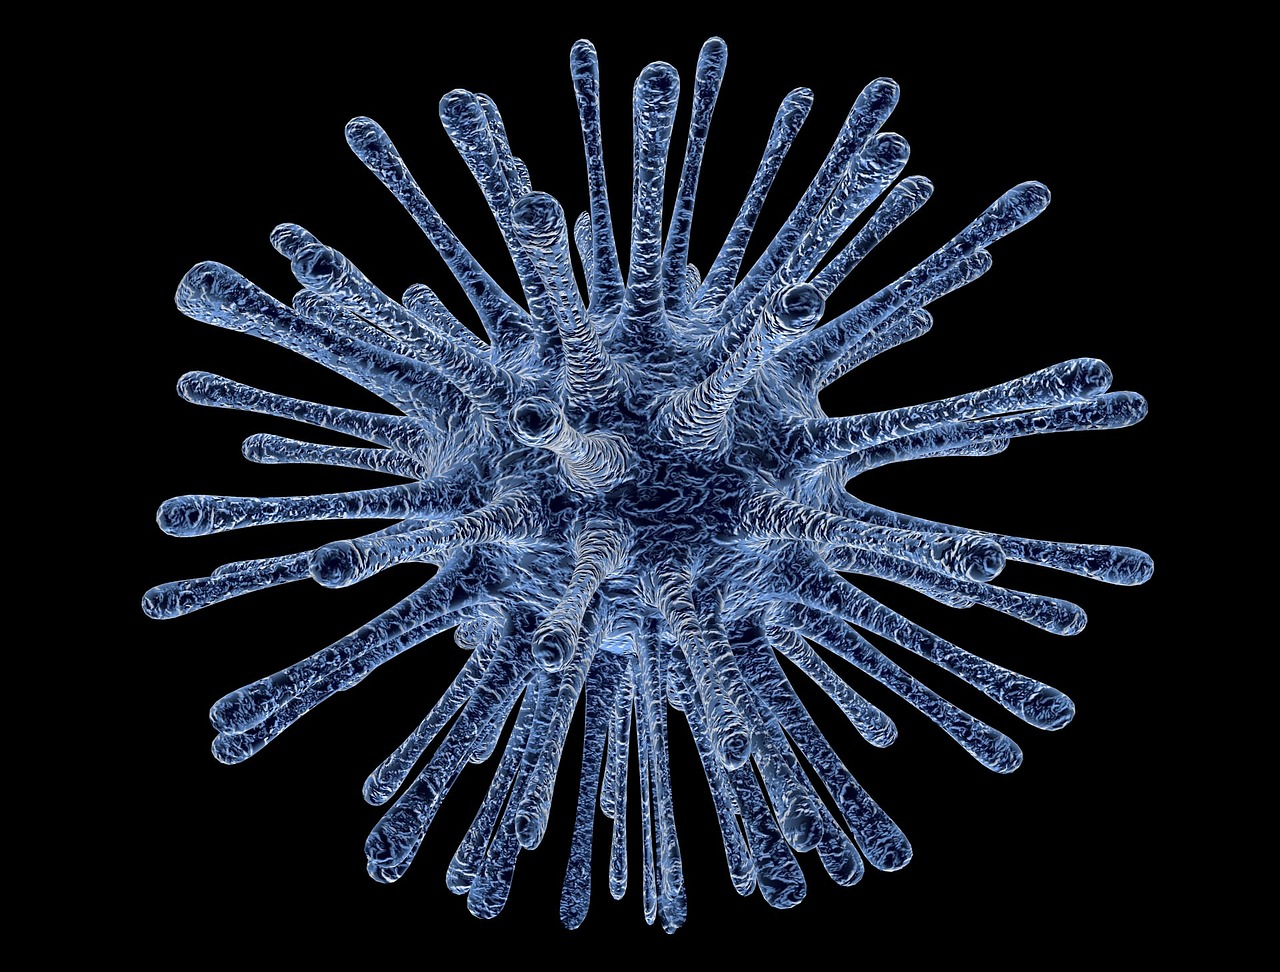 Los arbovirus podrían desencadenar la próxima pandemia: la OMS propone un nuevo plan para su prevención y control